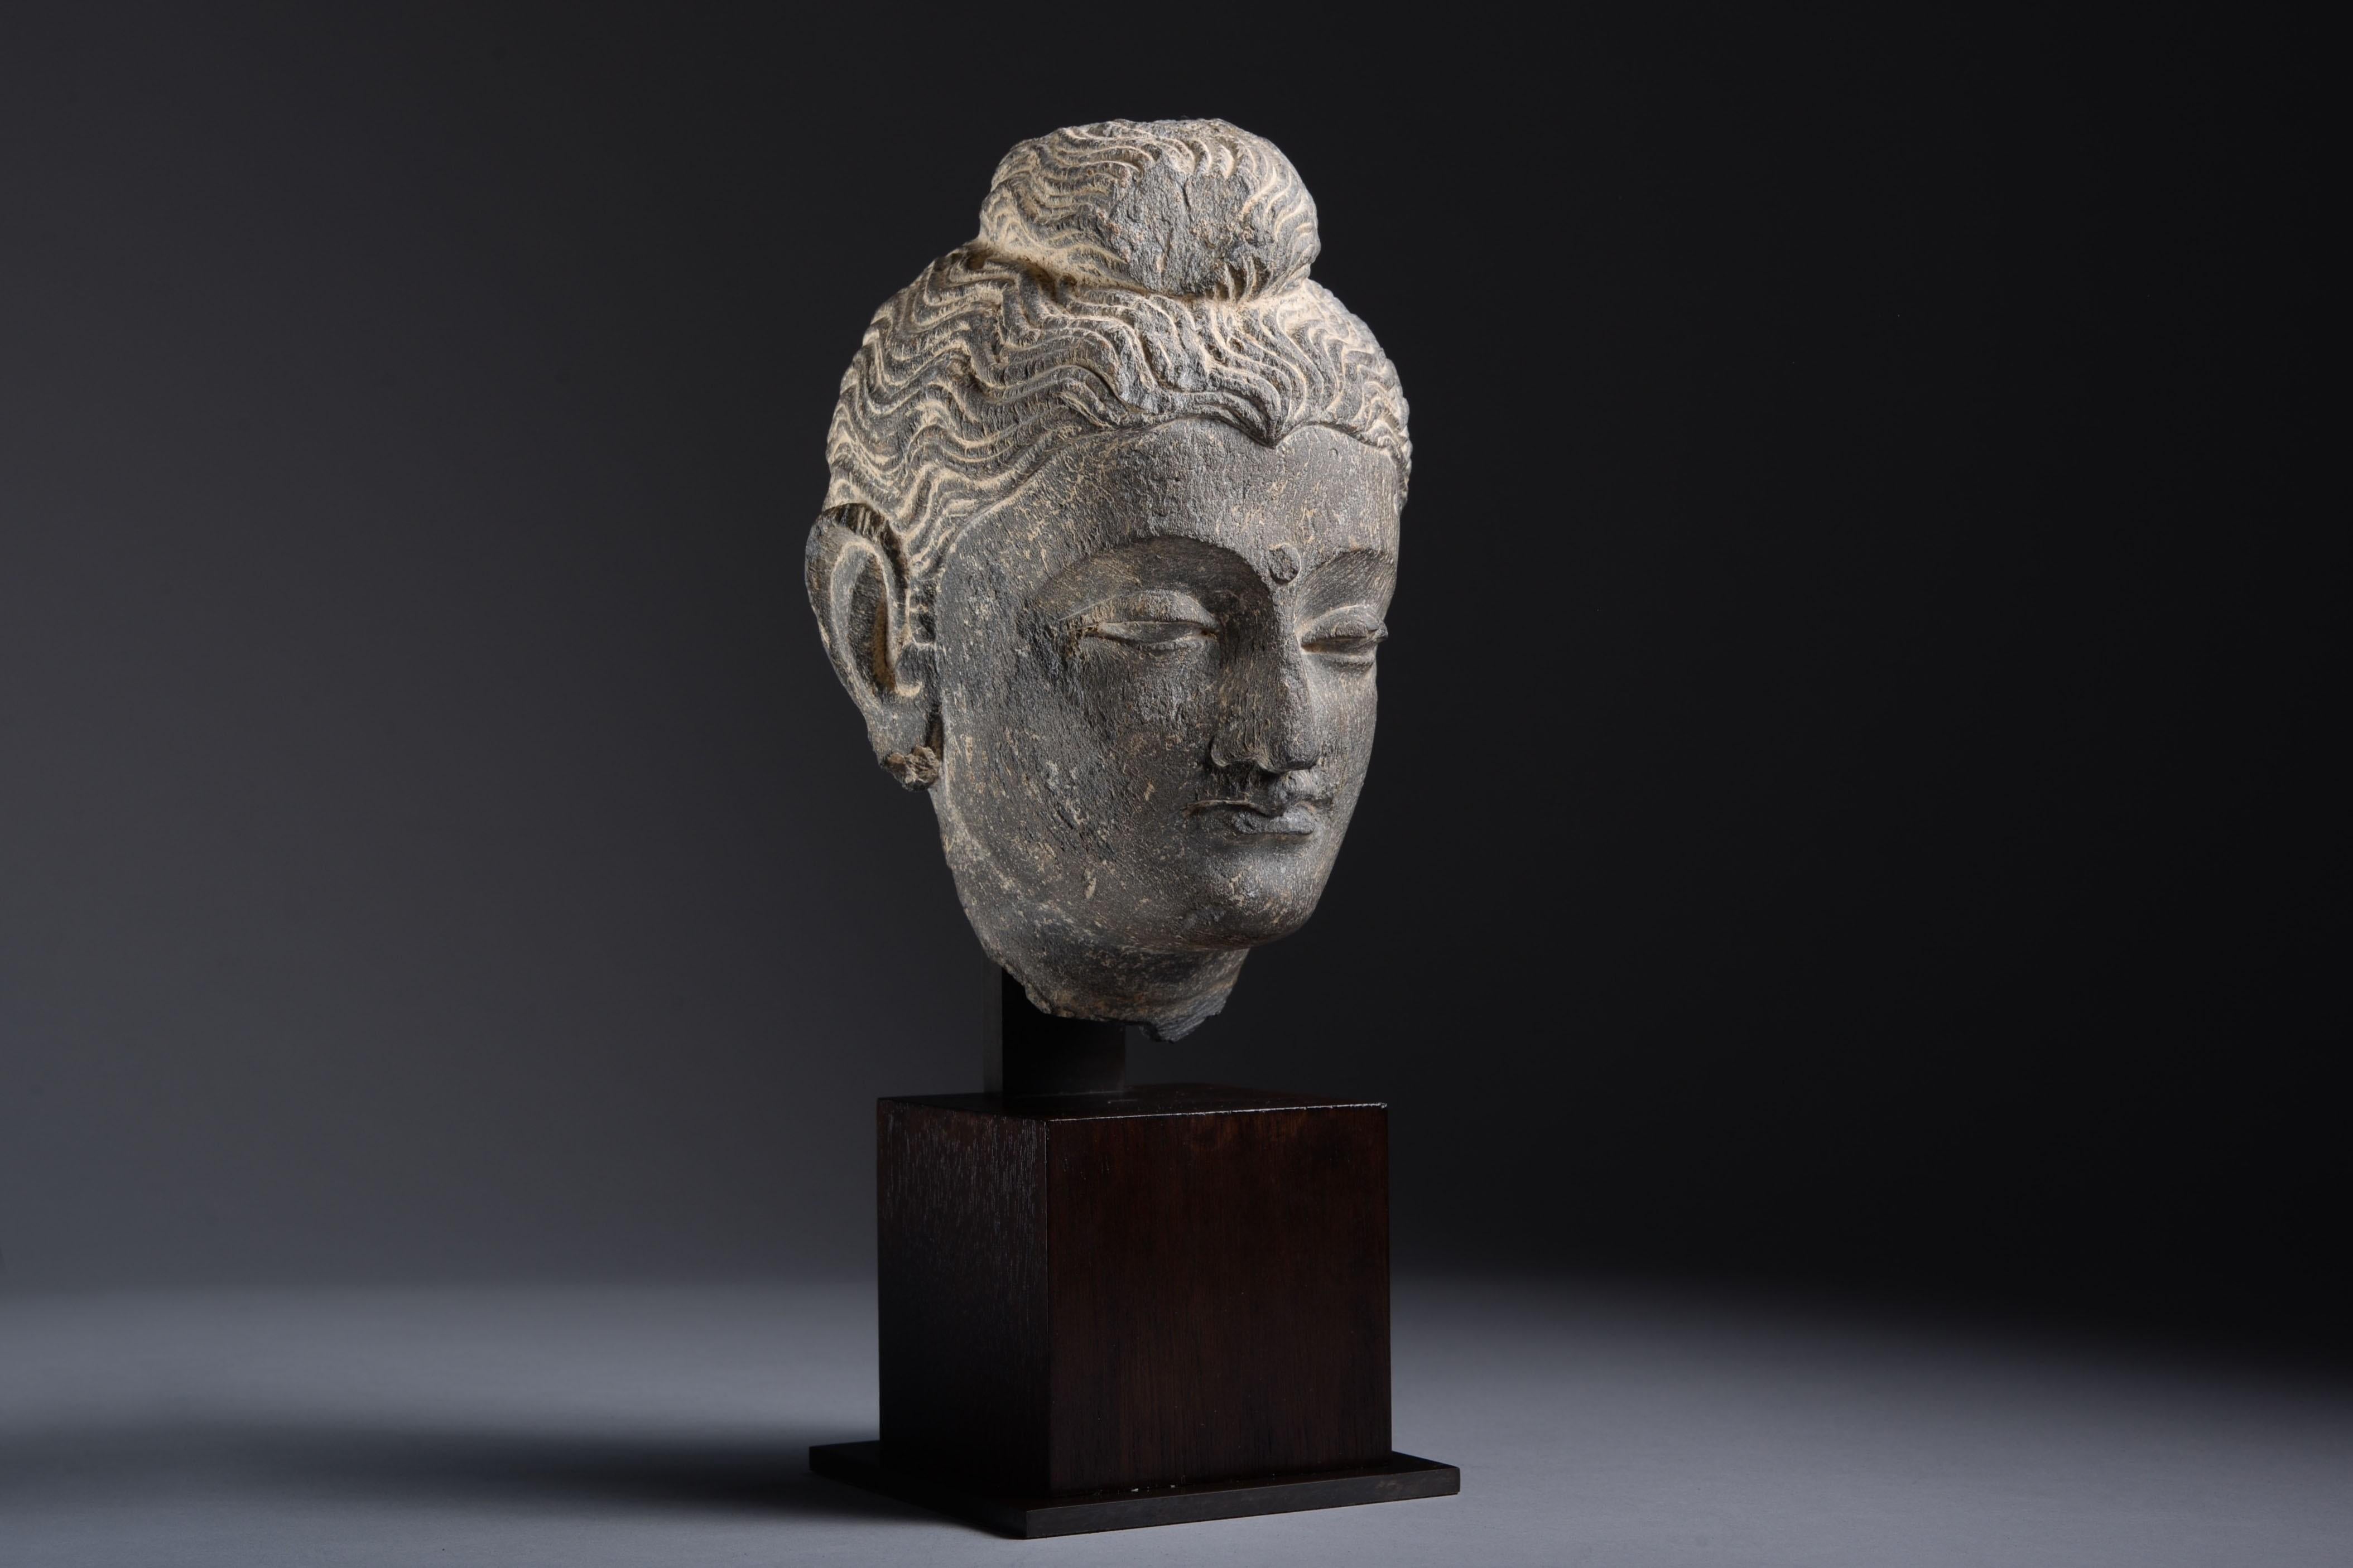 Gandharan Schist Head of Buddha - Sculpture by Unknown